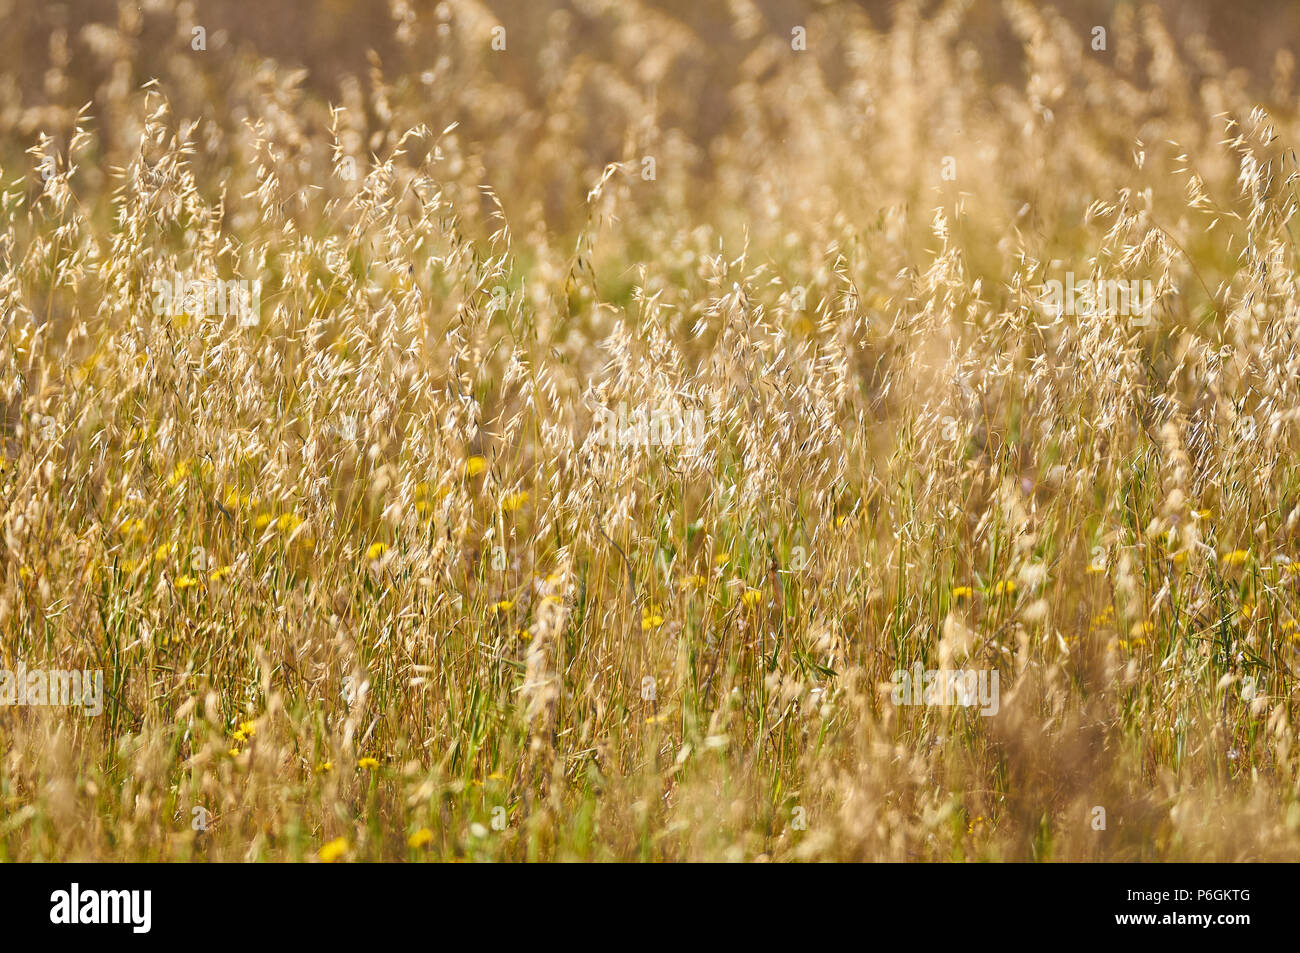 L'herbe folle avoine (Avena sp.) terrain avec fleurs dans pouvez Marroig immobiliers publics dans le Parc Naturel de Ses Salines (Formentera, Iles Baléares, Espagne) Banque D'Images